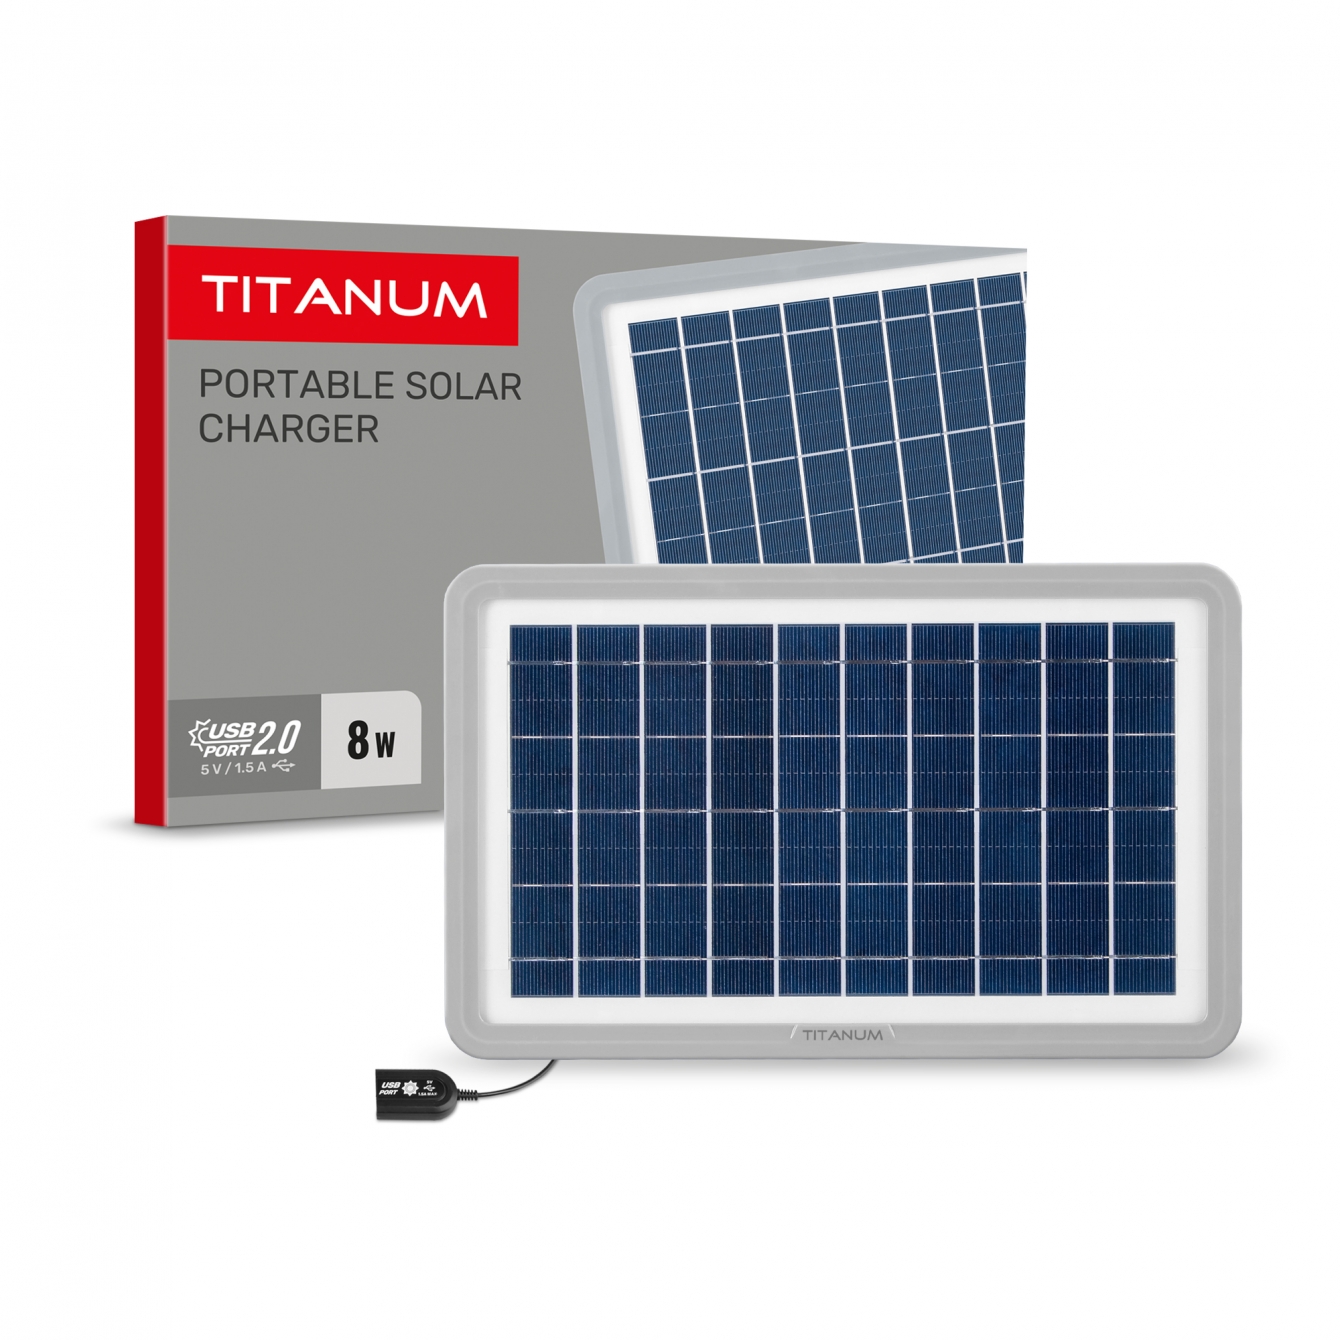 Портативная солнечная панель TSO-M508U Titanum 5V 8W IP65 типы разъемов: USB